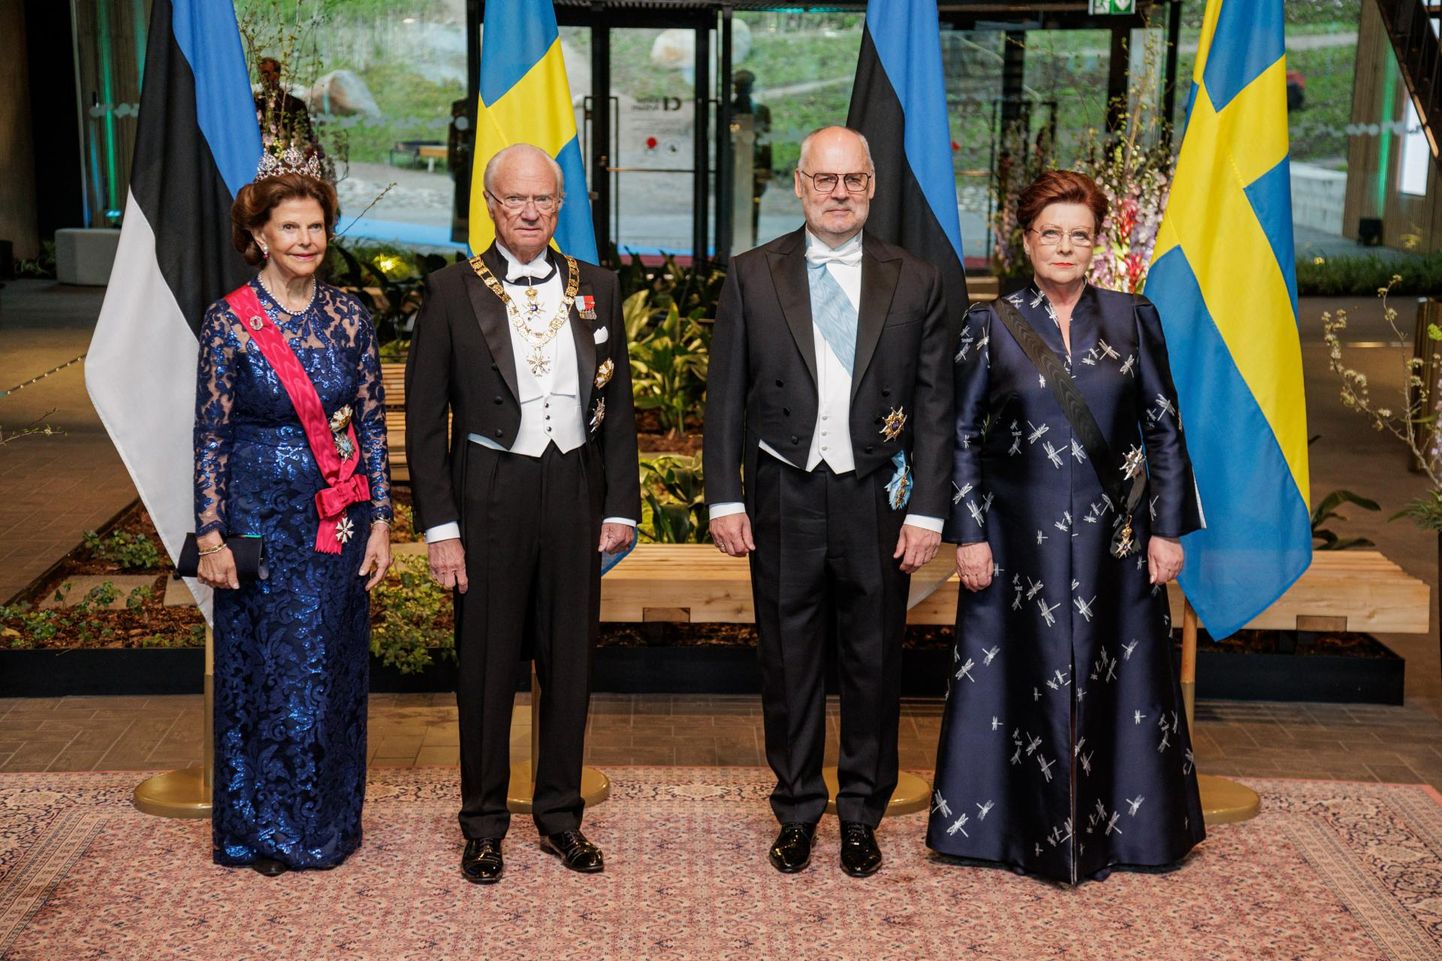 Üheks presidendi kantselei tänavuse ülekulu põhjuseks oli Rootsi kuningapaari visiit maikuus. Foto on tehtud 2. mail Viimsi Artiumis toimunud pidulikul õhtusöögil. Vasakult Rootsi kuninganna Silvia ja kuningas Carl XVI Gustaf ning president Alar Karis ja proua Sirje Karis.